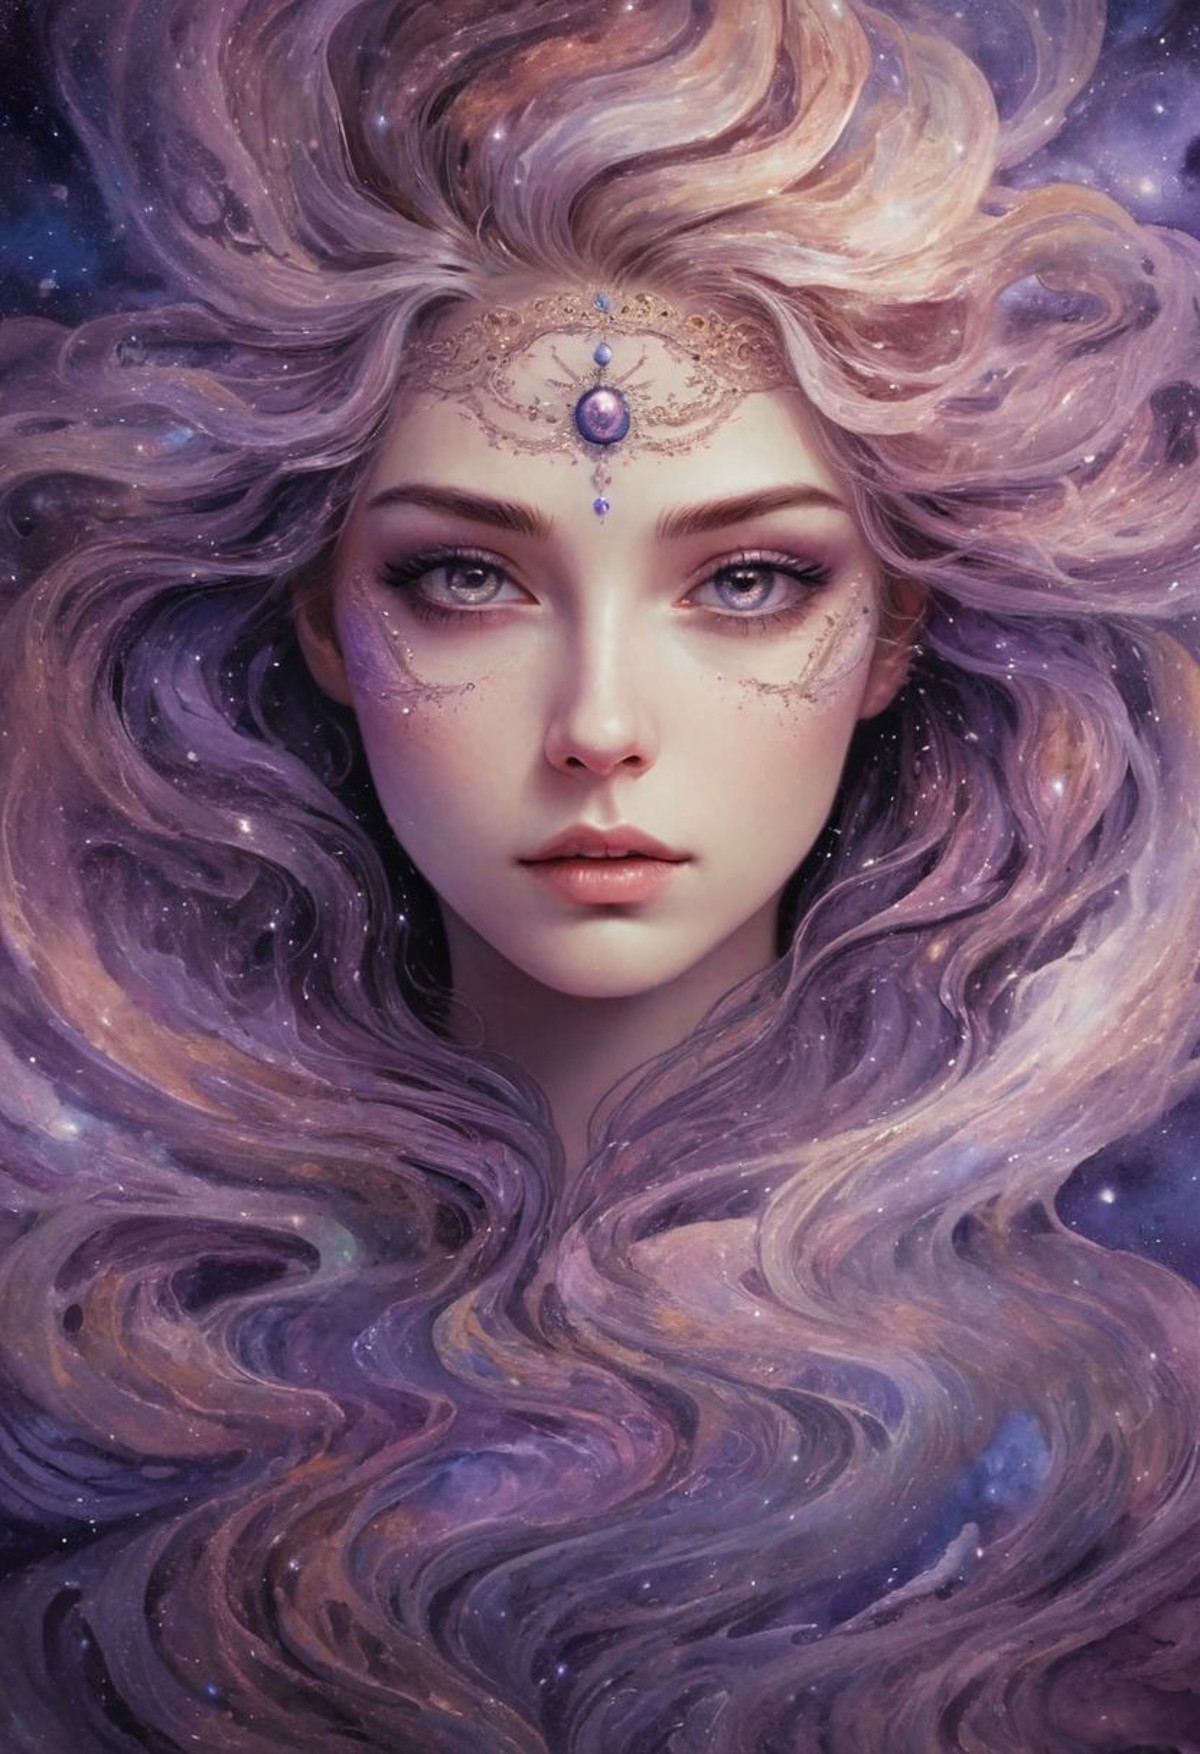 celestial being woman's portraitwith dark purple eyes, swirling galaxies, nebulae, intricate cosmic details, cosmic eyes, ...